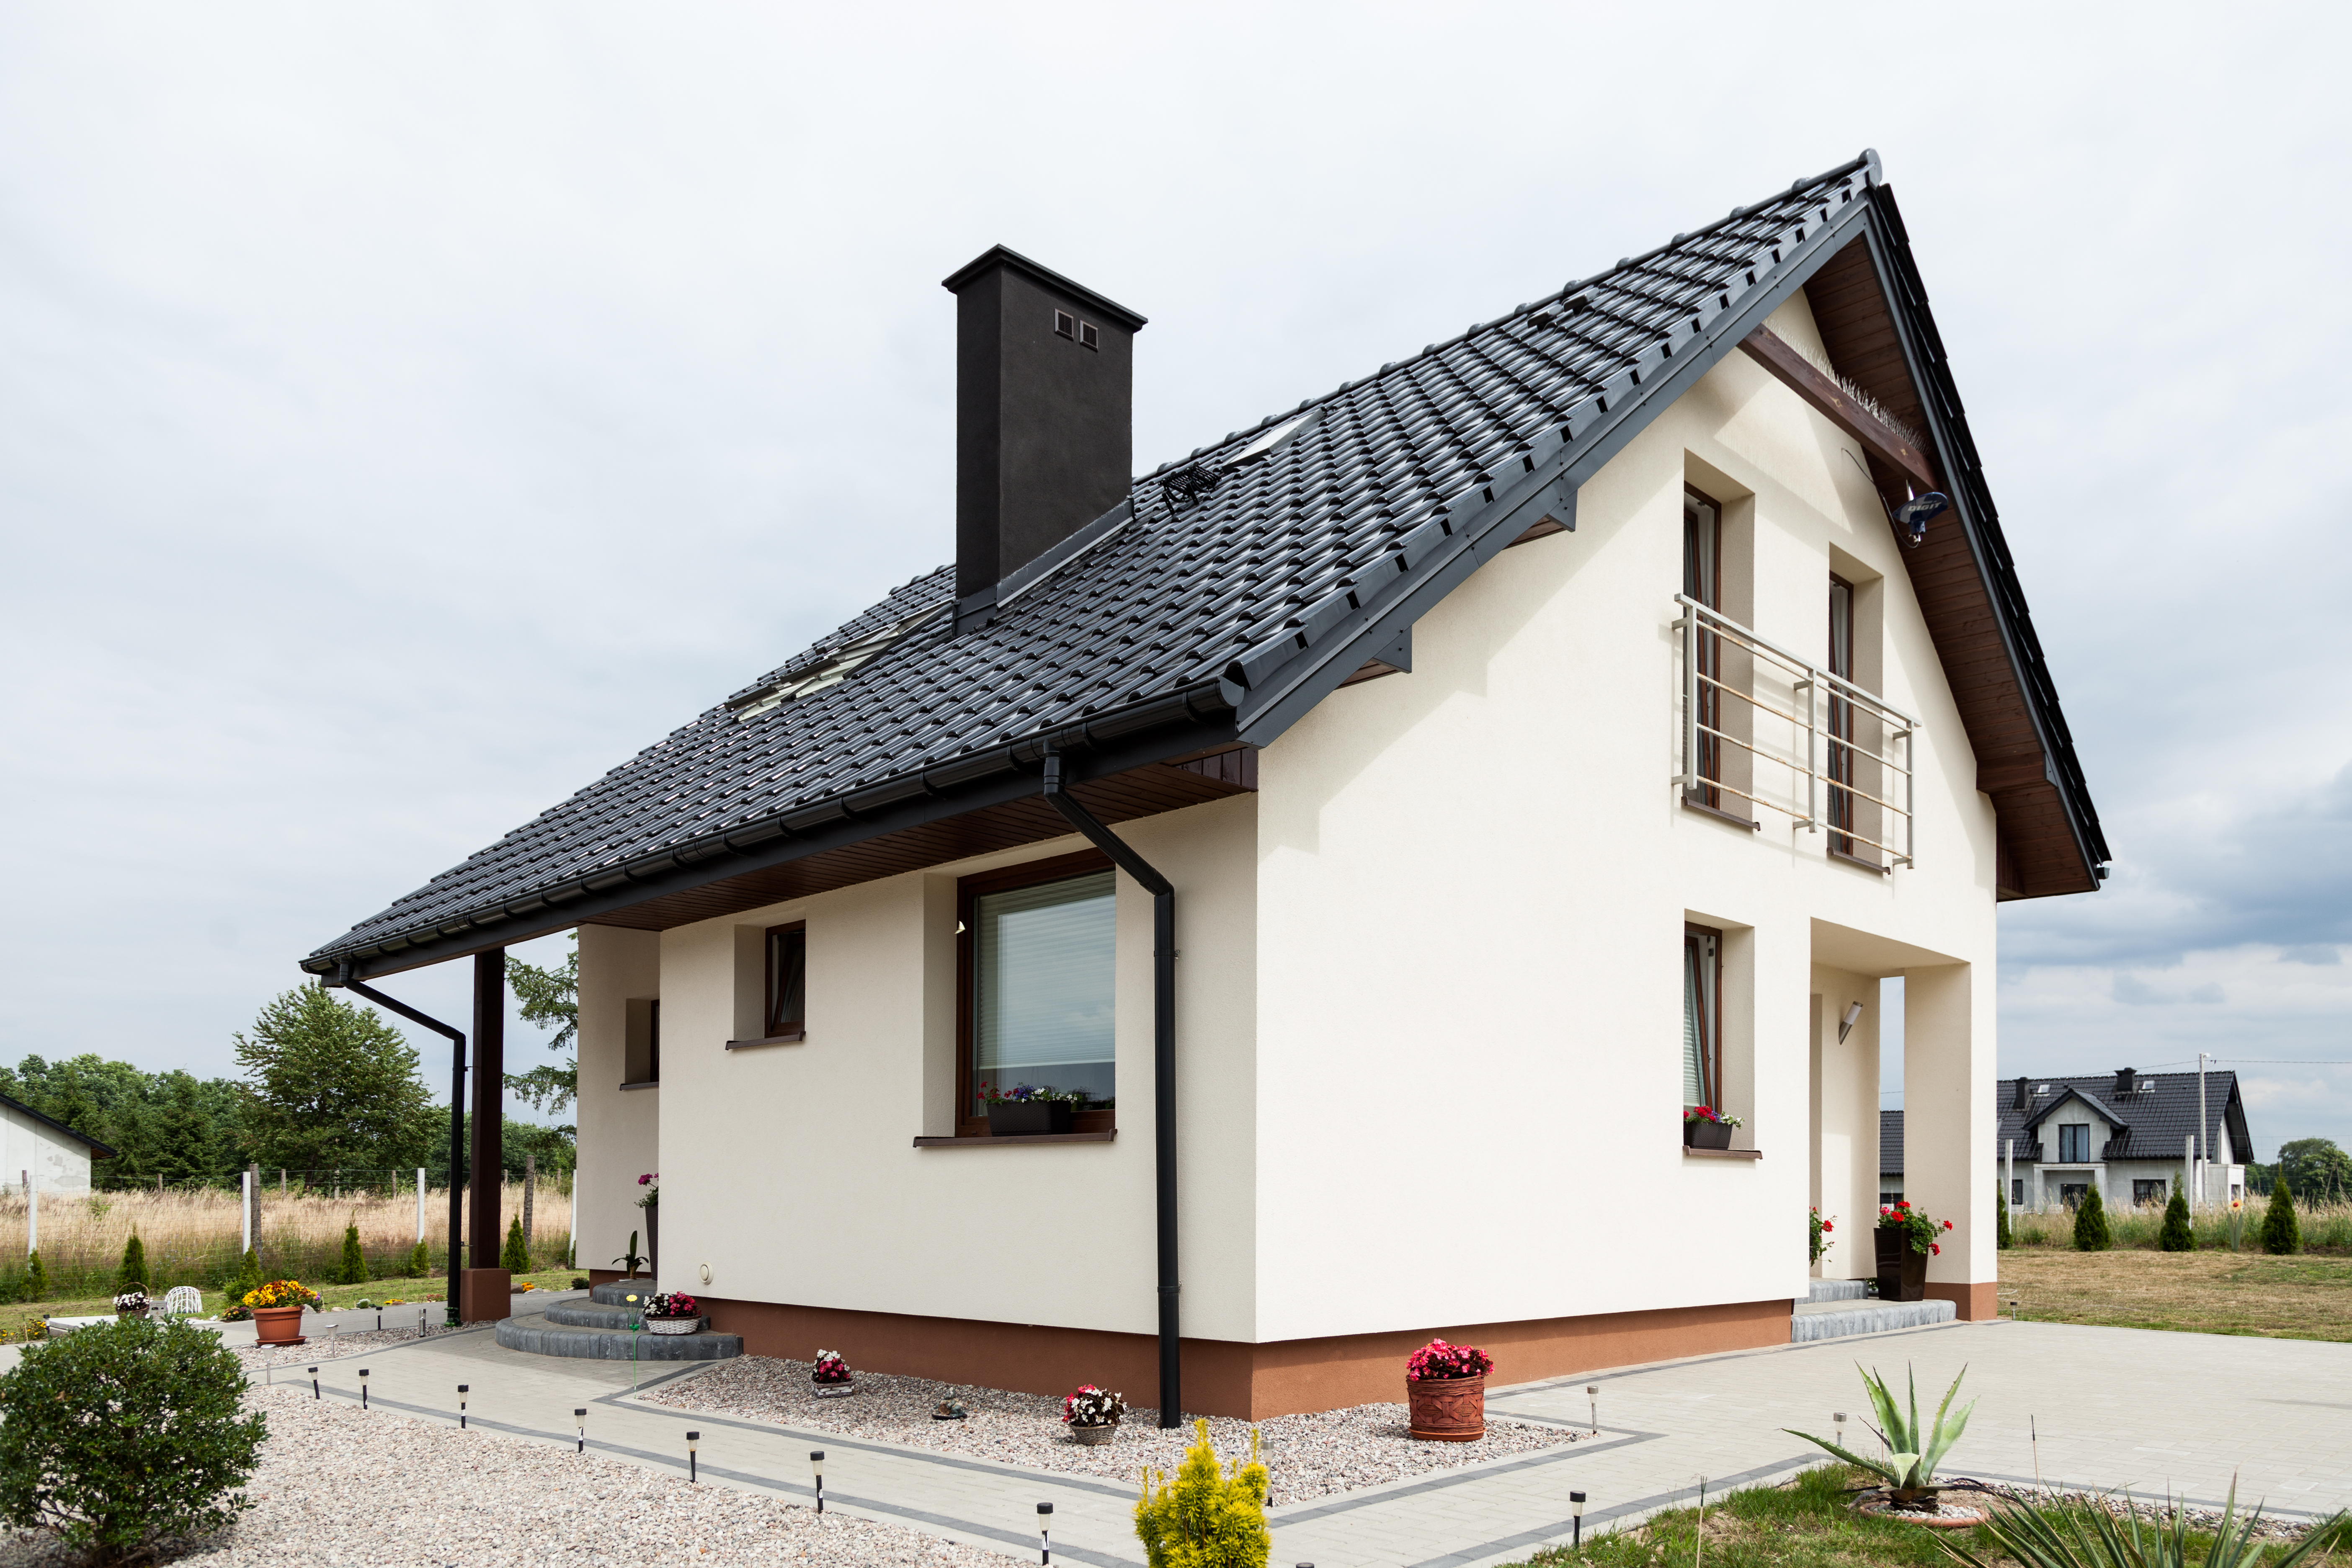 Budowa domu pod klucz Wielkopolska – wskazówki dla inwestorów